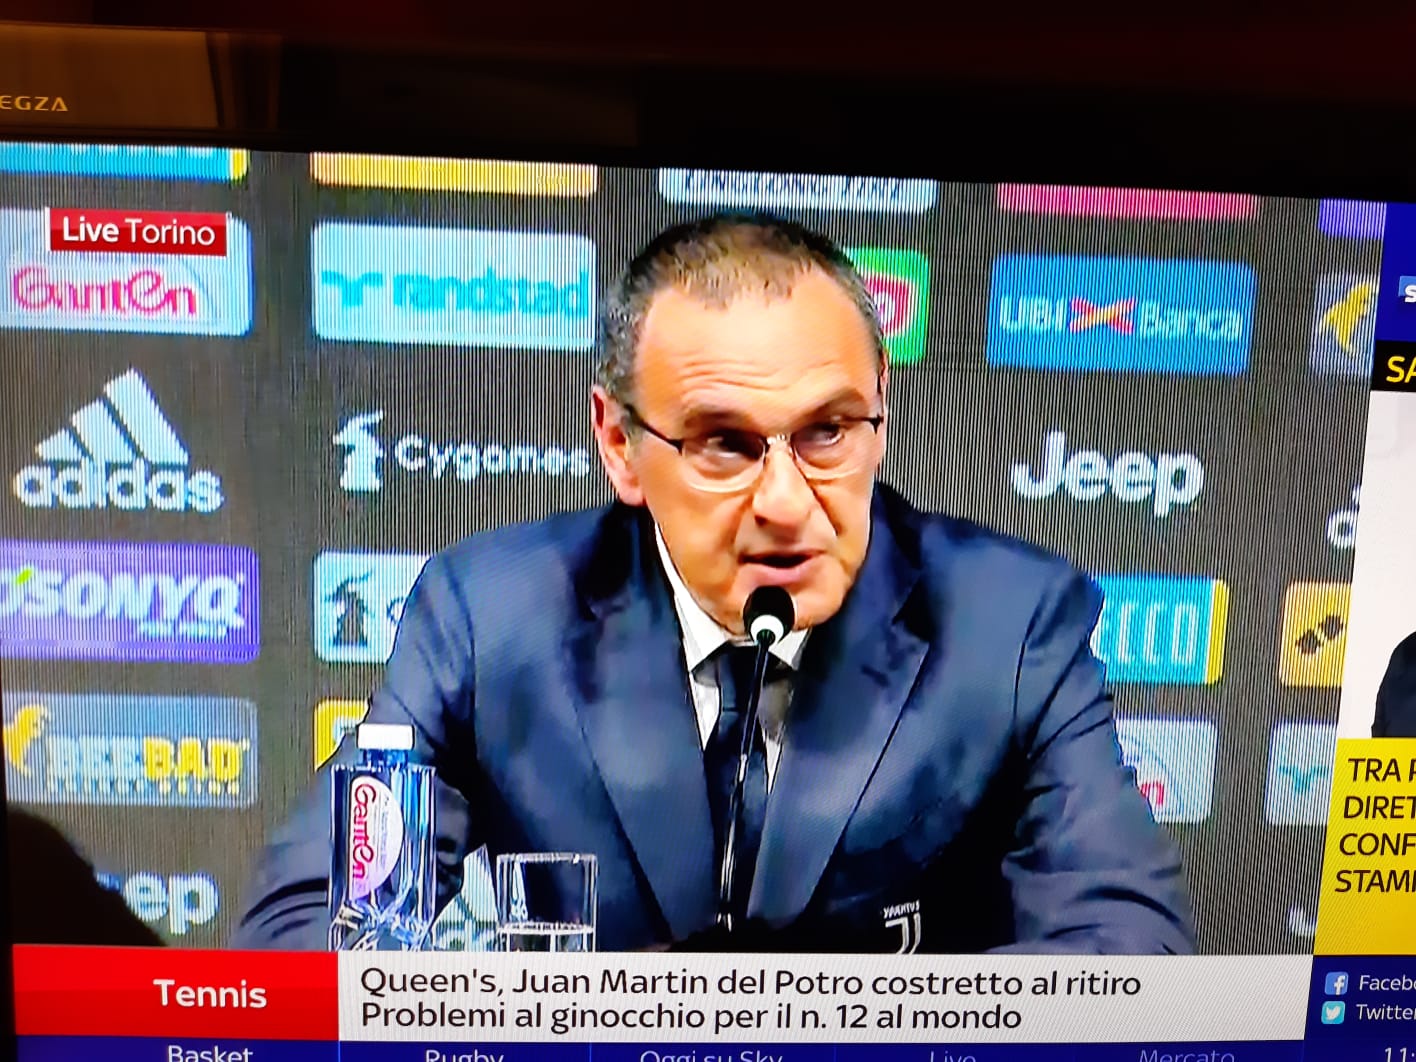 La Uefa chiede un giudizio su Sarri allenatore della Juve, i tifosi si scatenano